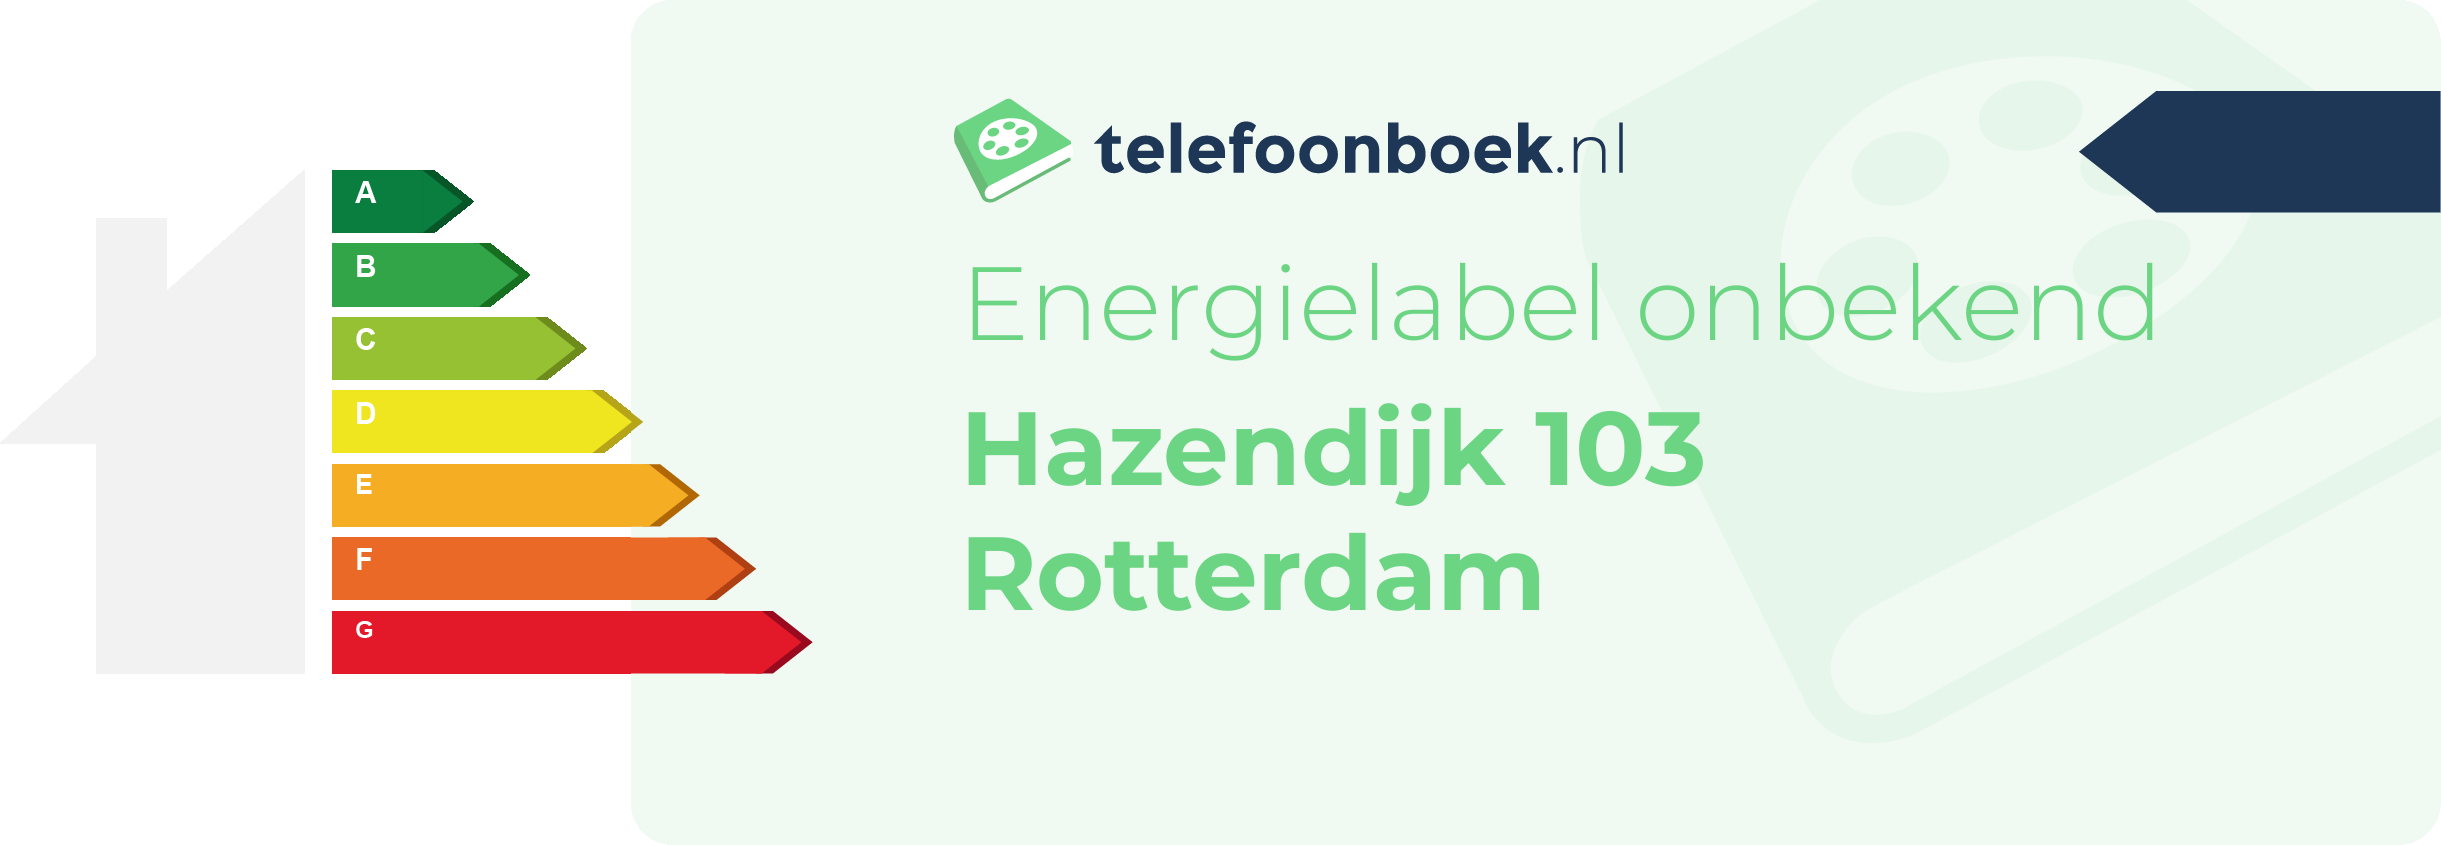 Energielabel Hazendijk 103 Rotterdam